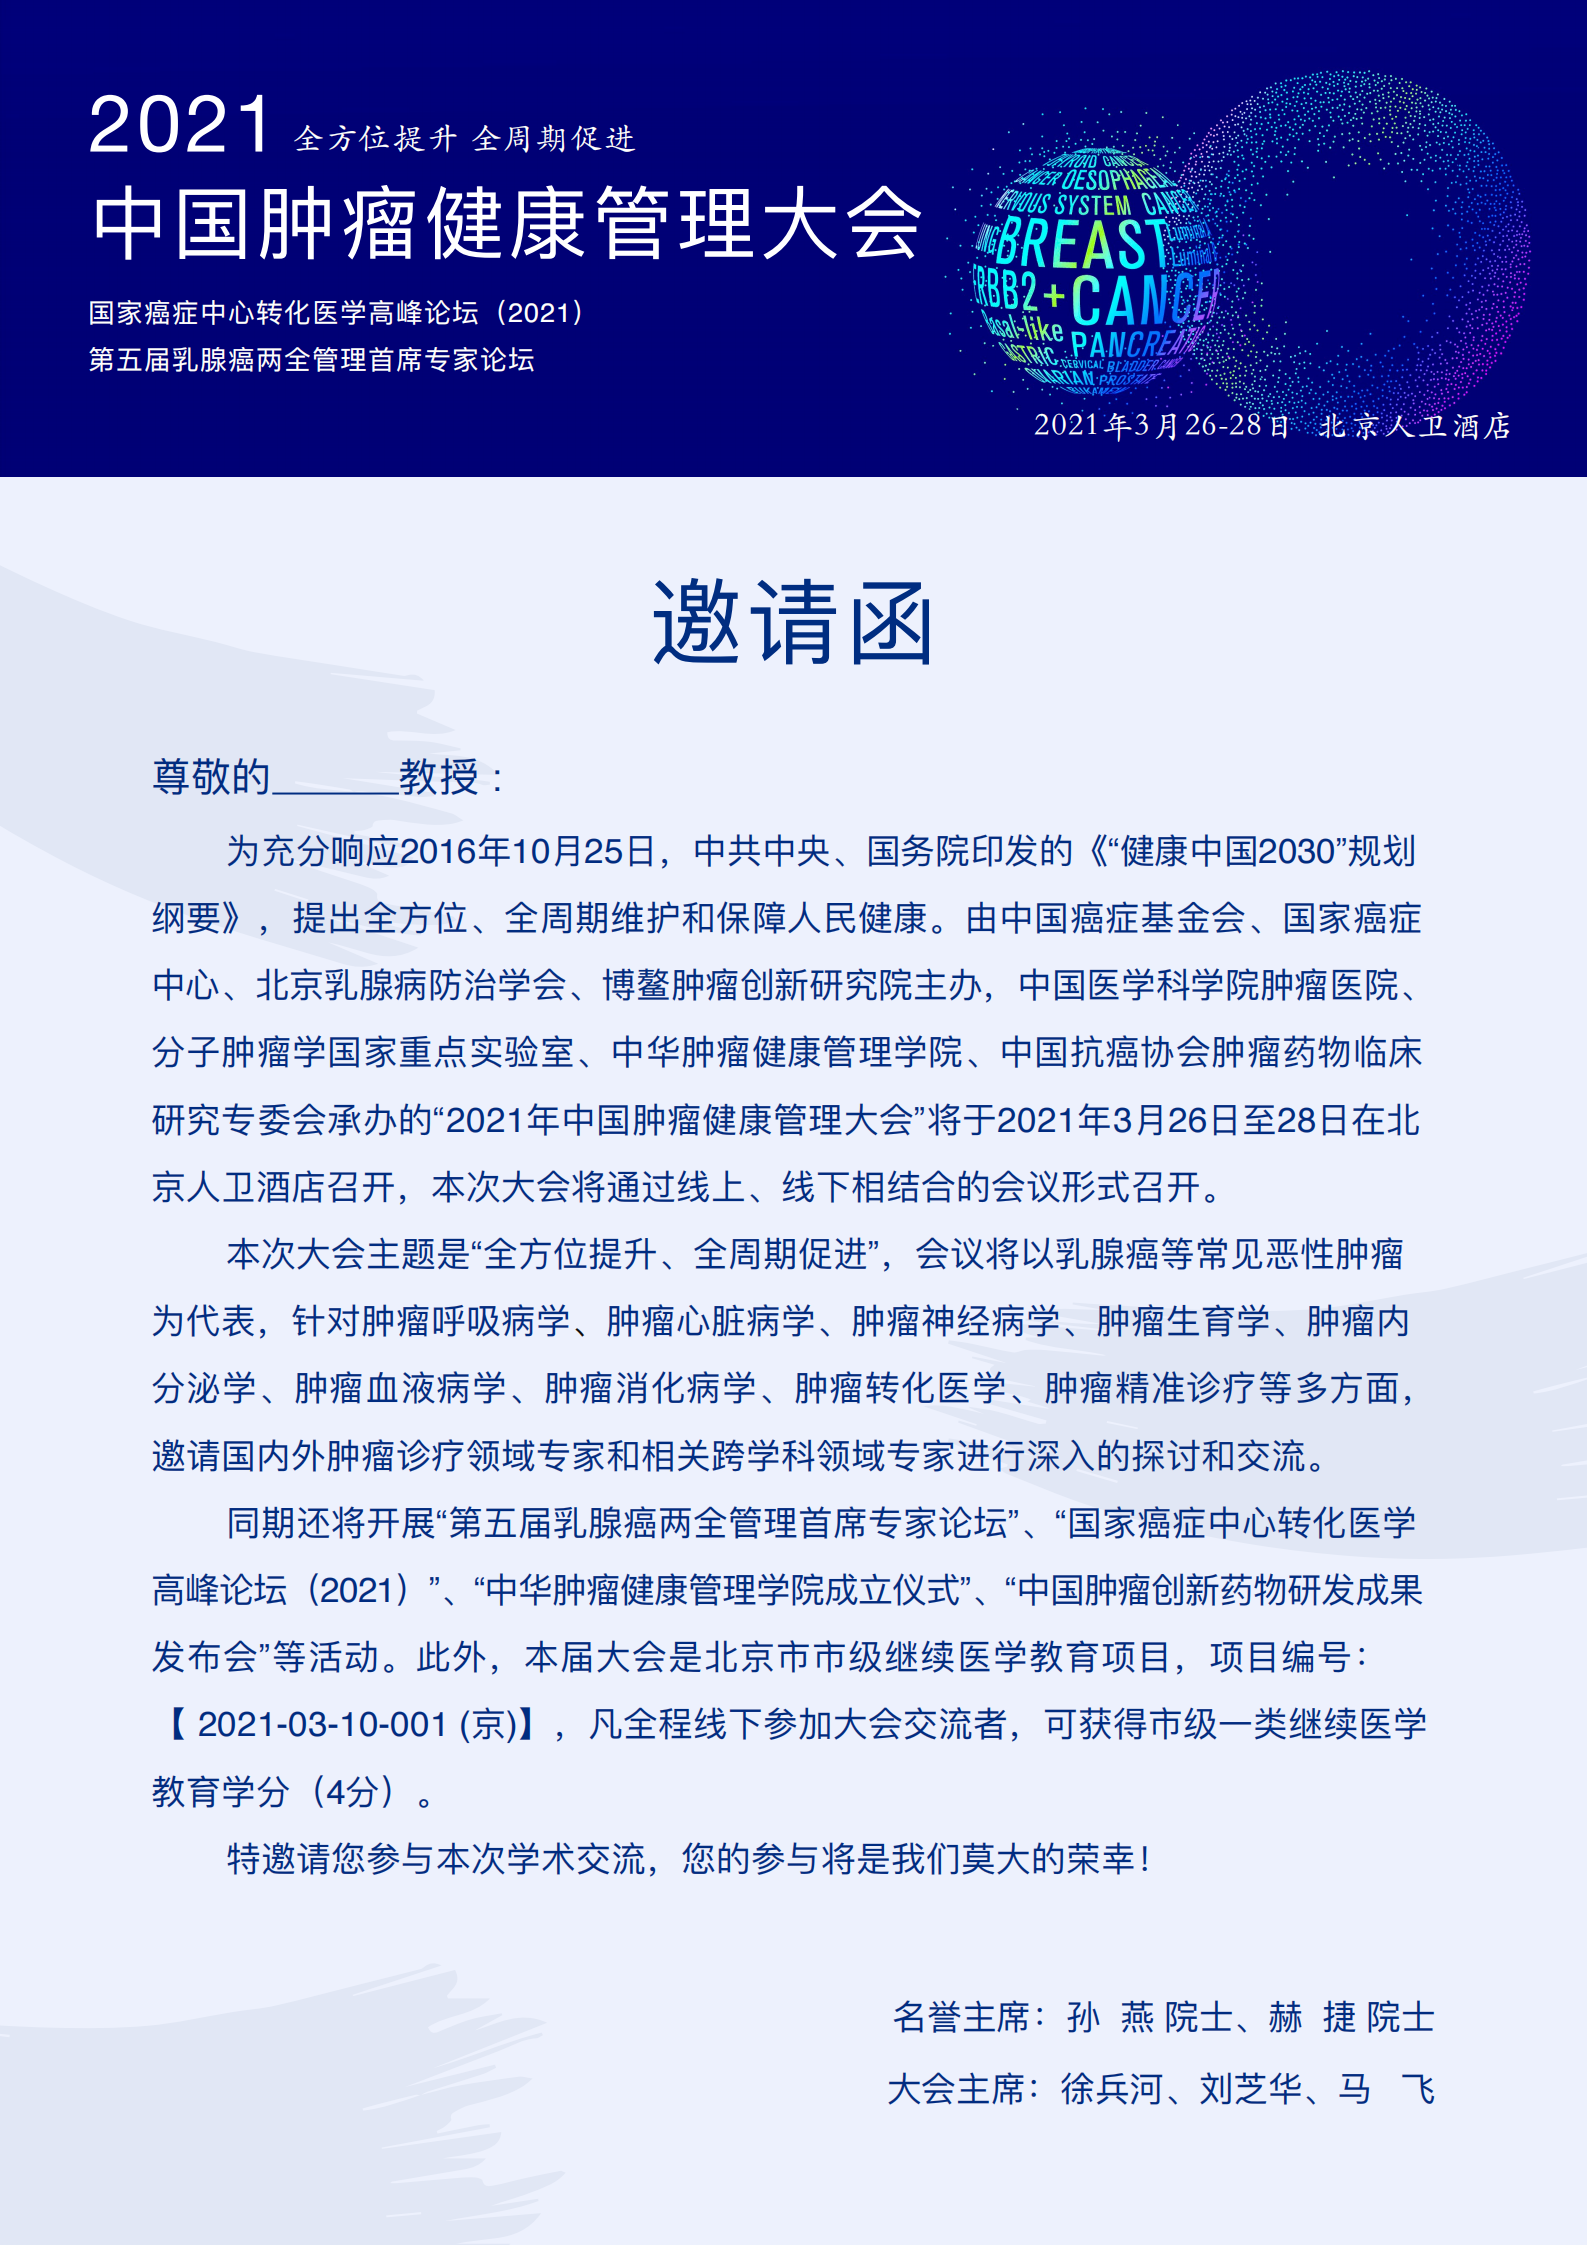 邀请函-2021中国肿瘤健康管理大会(1)_00.png